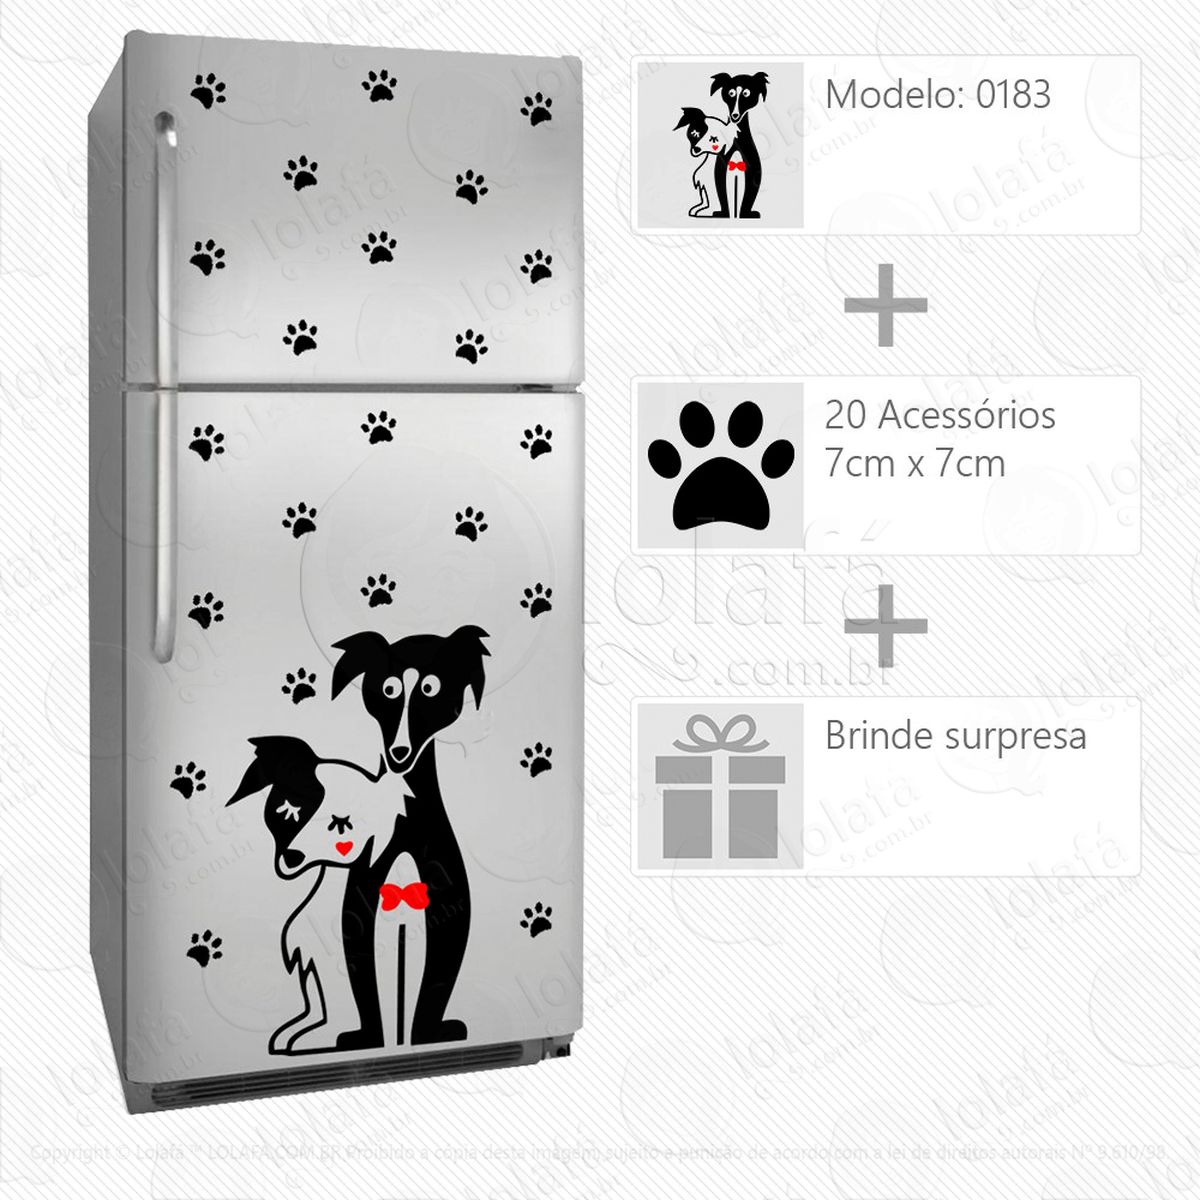 cachorros adesivo para geladeira e frigobar - mod:183